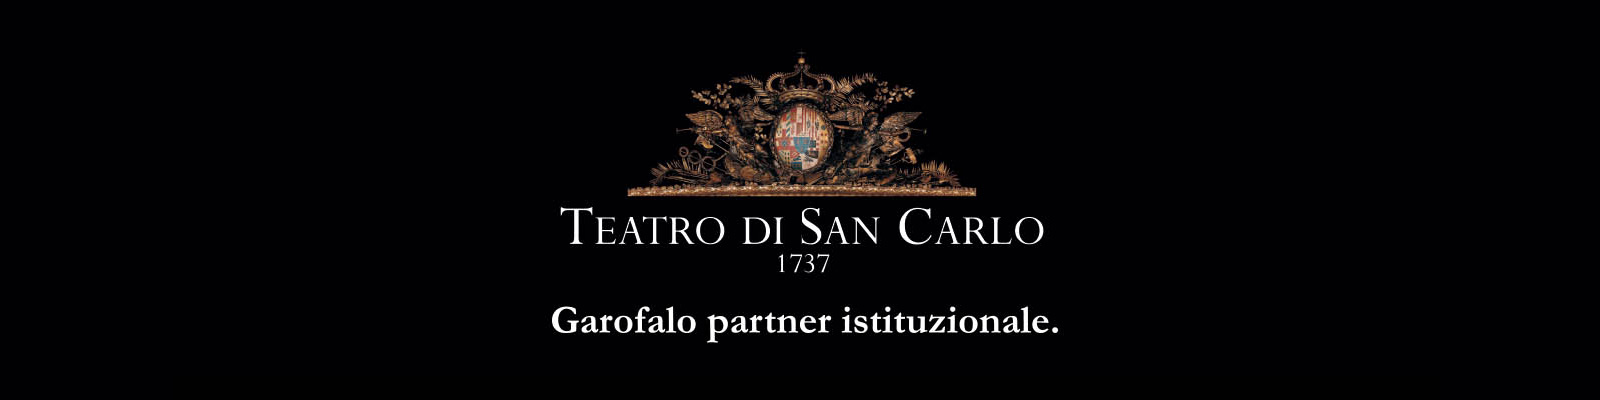 Pasta Garofalo sponsrar Teatro S. Carlo